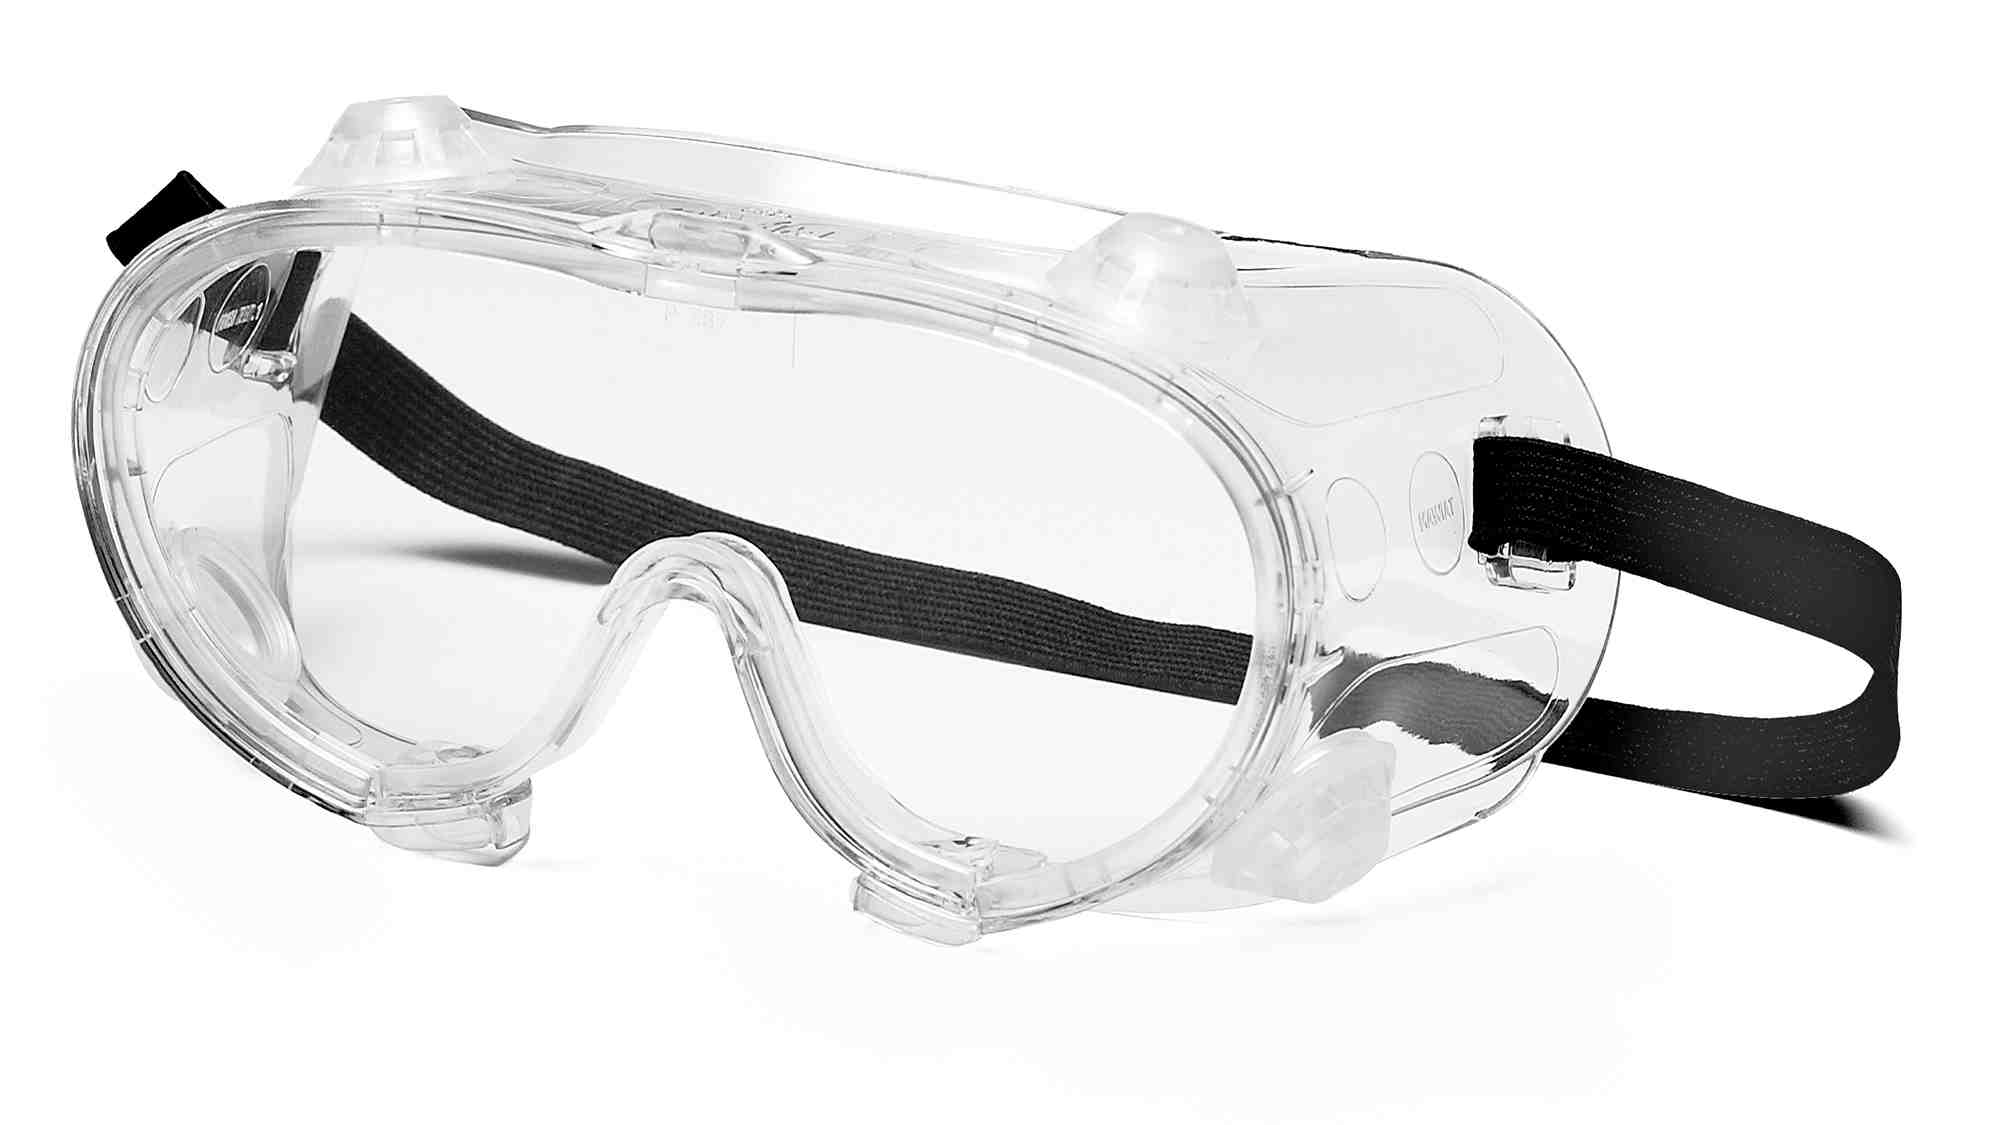 Очки защитные воде. ANSI Z87.1 очки. Очки защитные g-07-130 Clear. Очки газосварщика ANSI Z87.1. Очки газосварщика Ампаро премиум (222503).